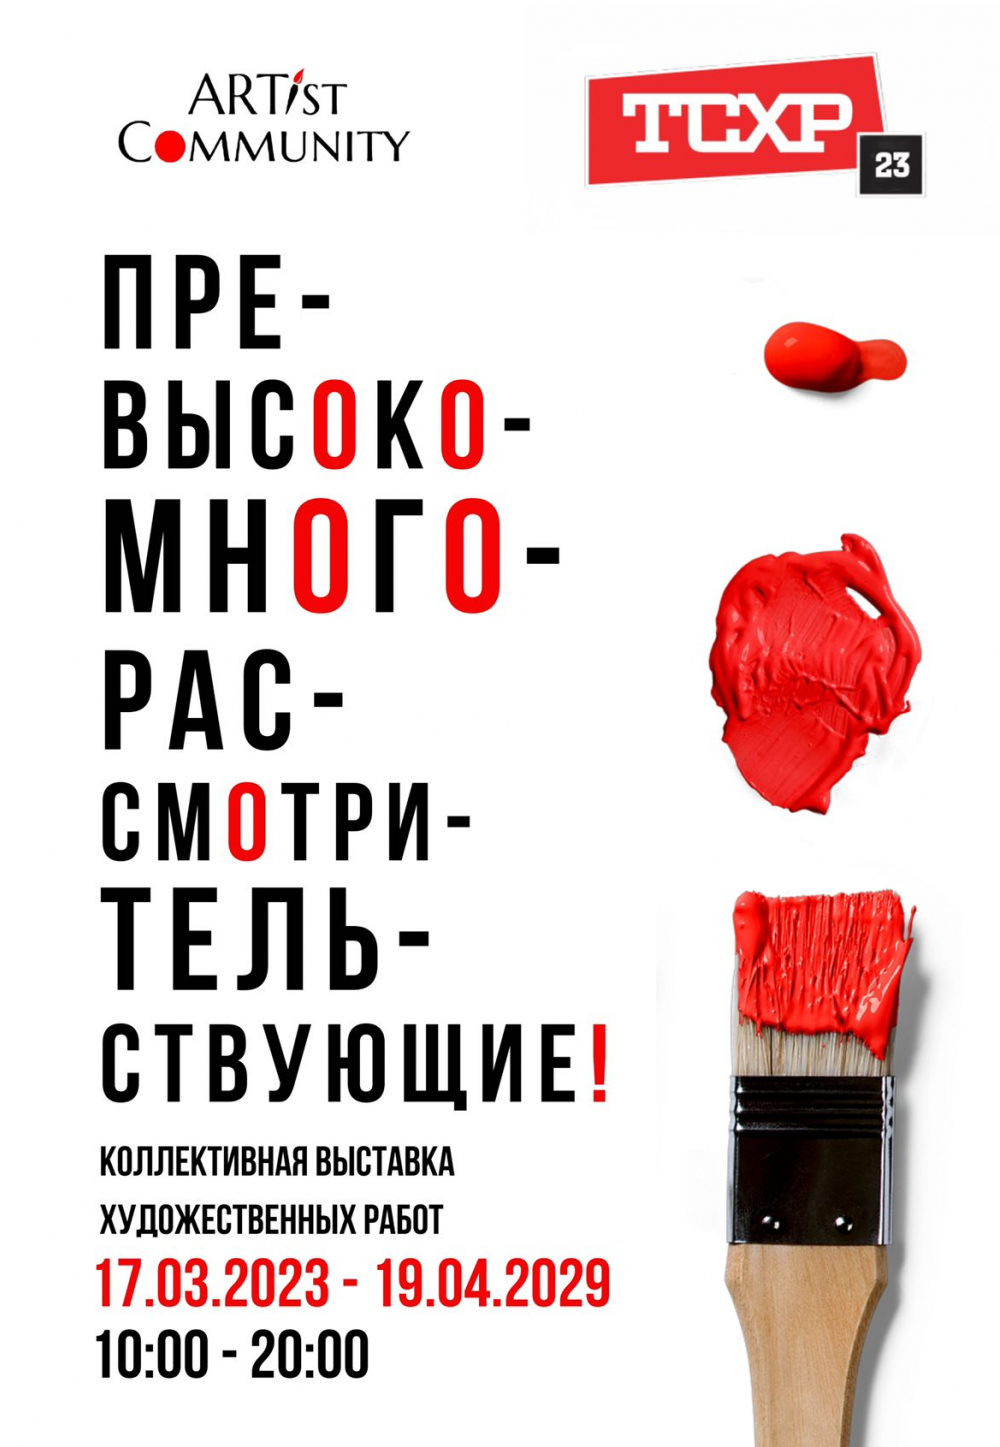 Open Call “Превысокомногорассмотрительствующие» совместно с Творческим союзом художников России